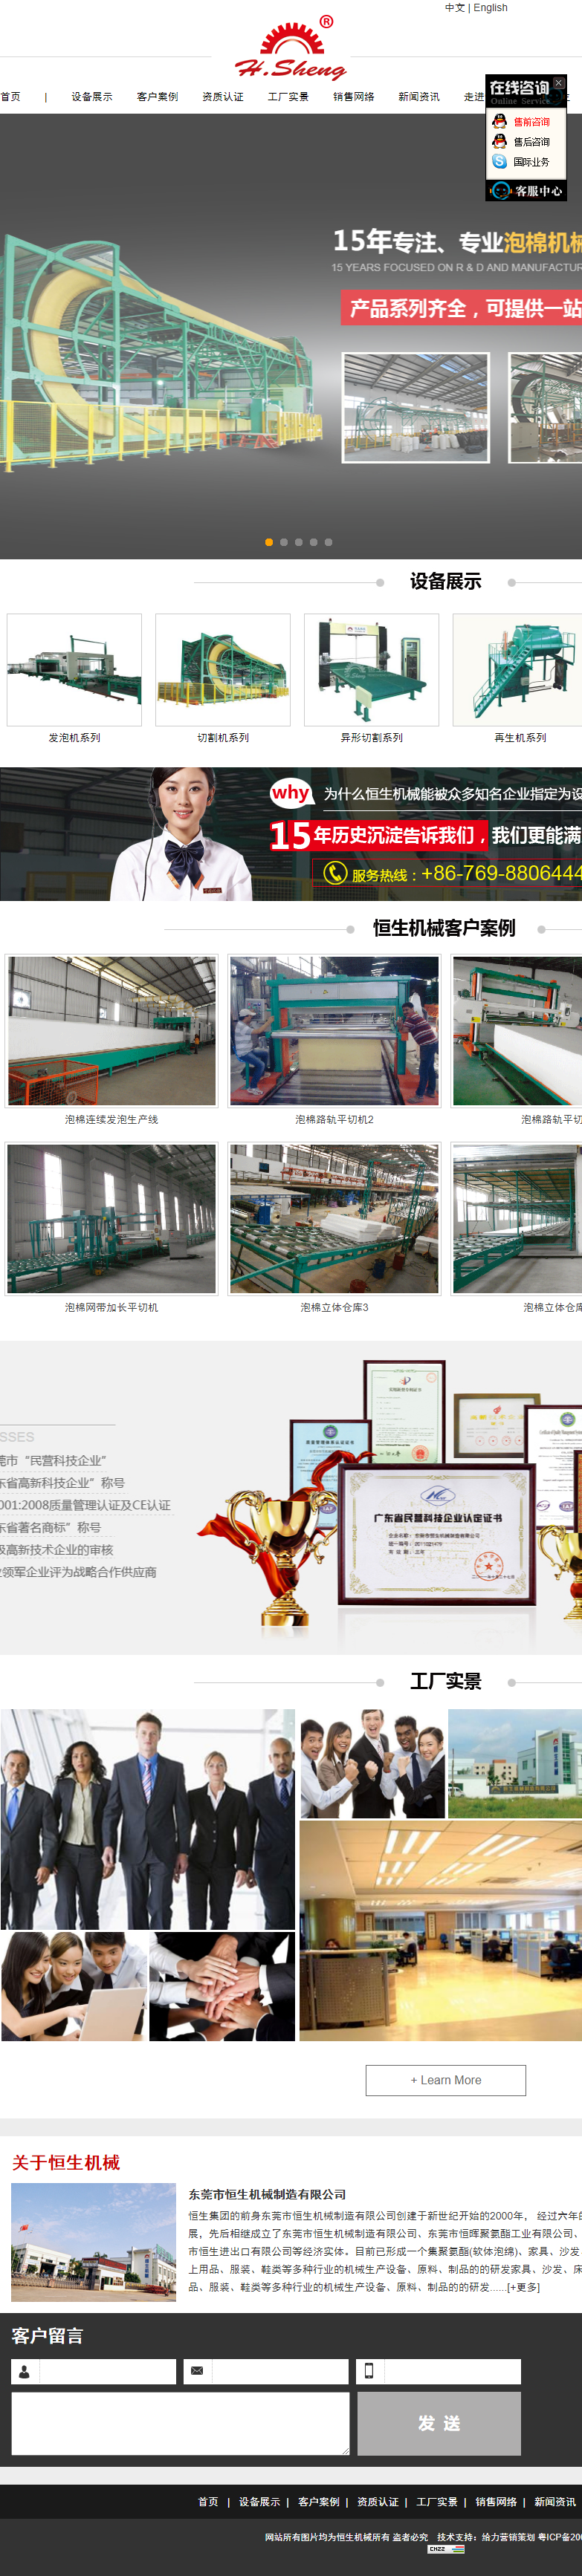 东莞市恒生机械制造有限公司网站案例